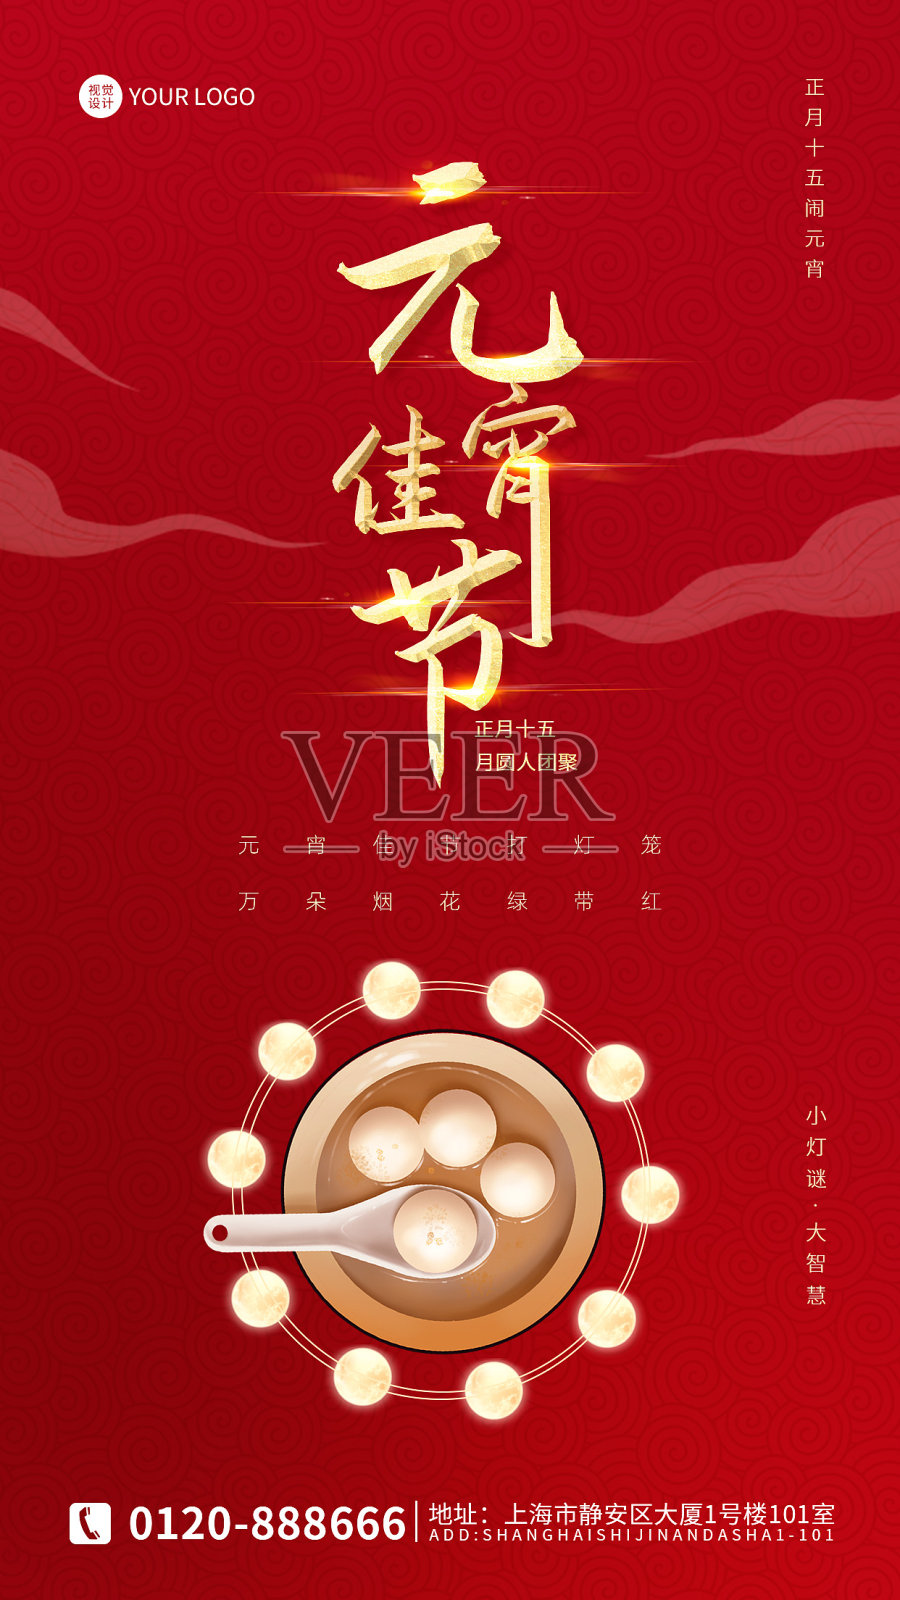 红色时尚创意喜庆元宵节促销海报设计模板素材